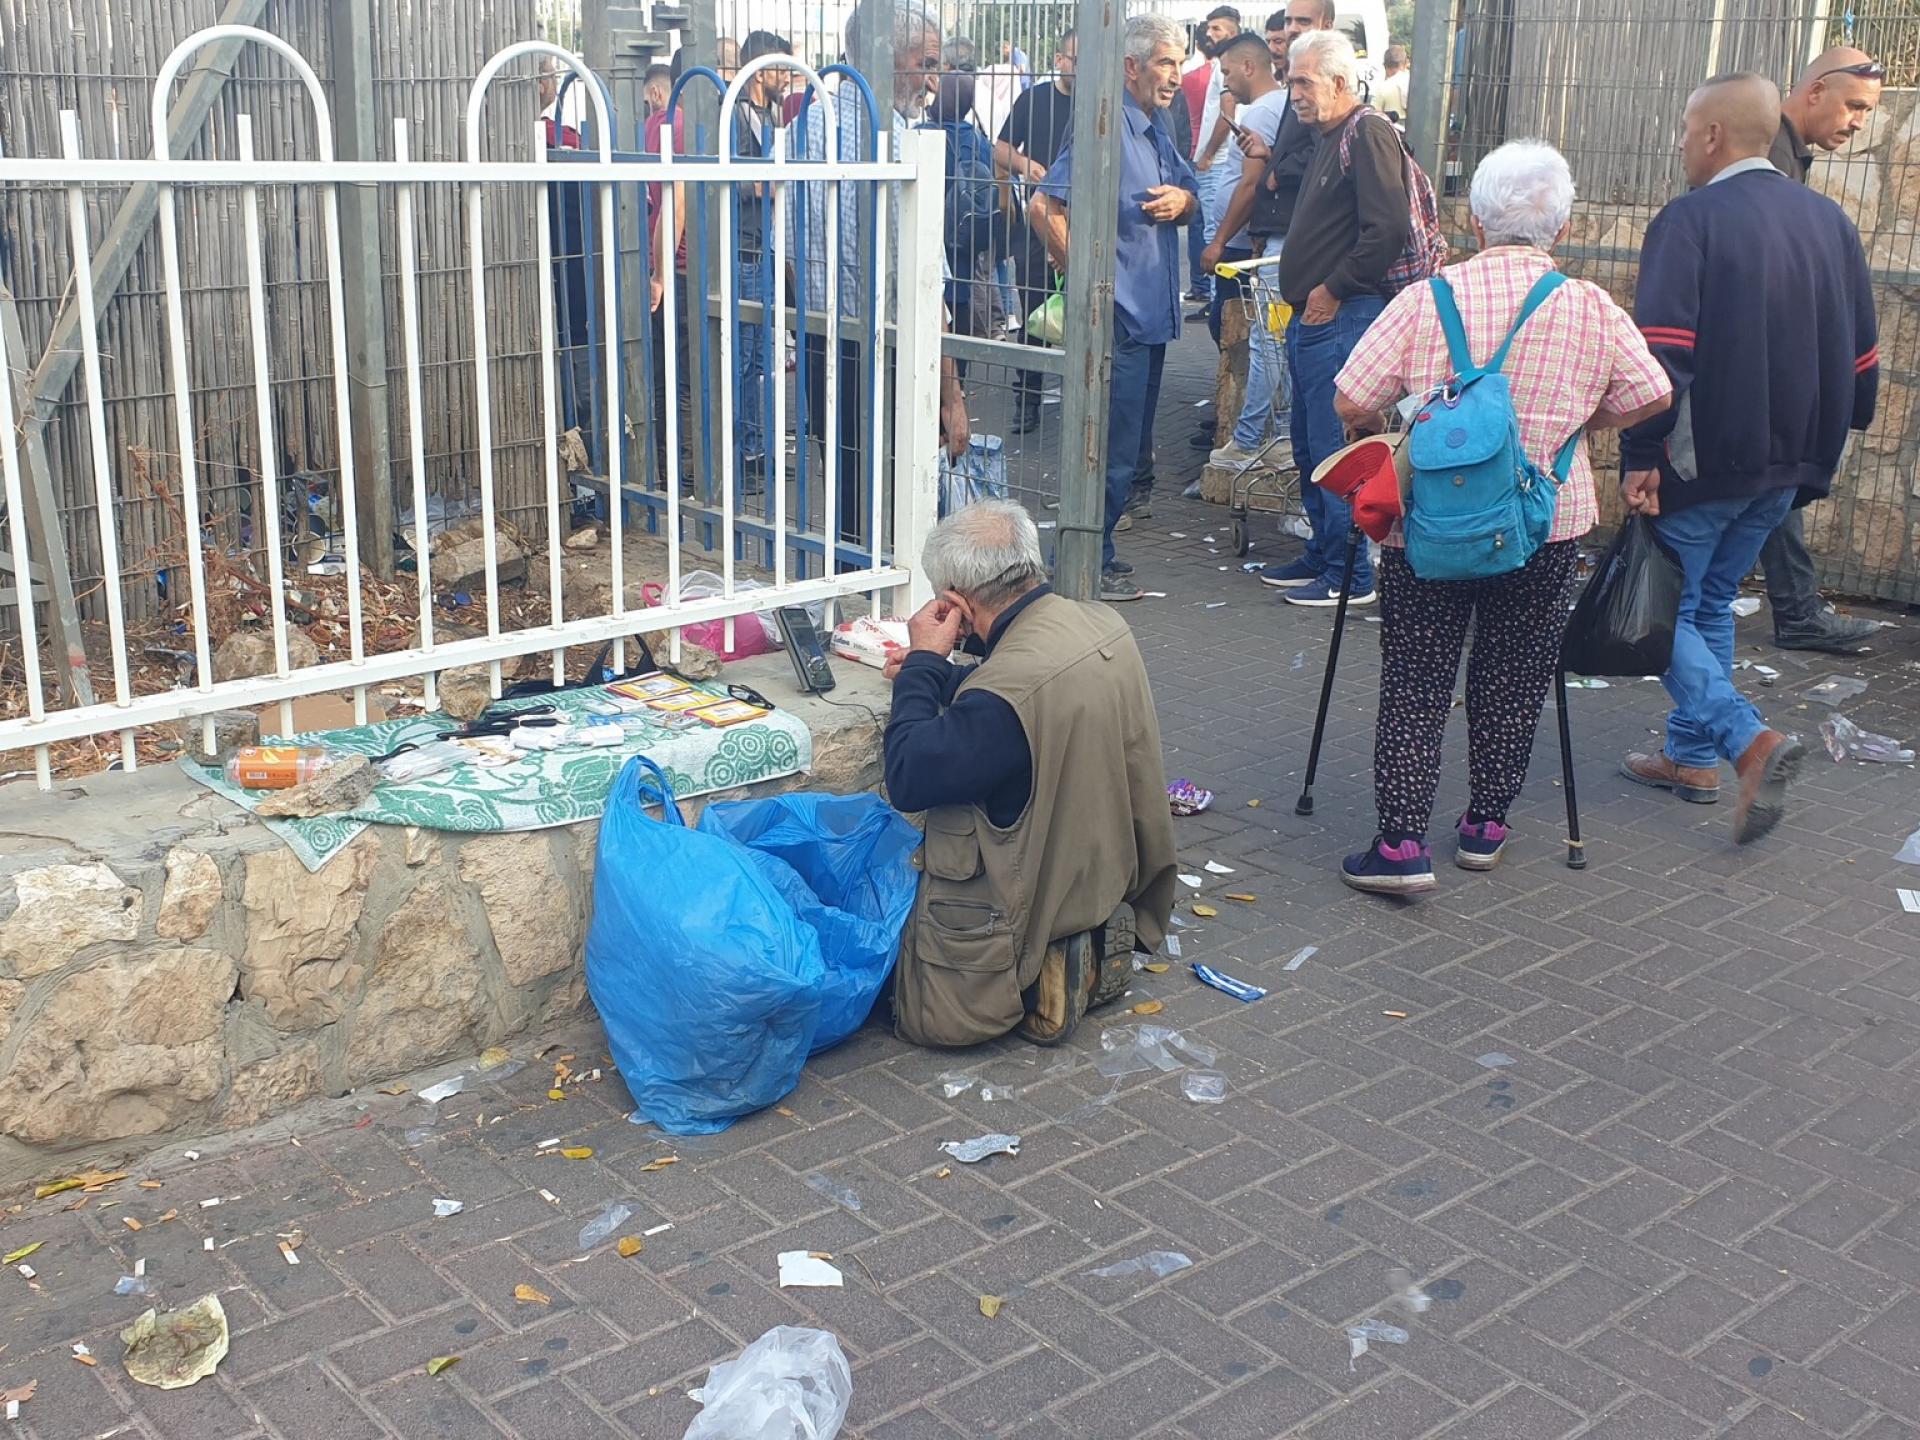 מחסום בית לחם = סוחר זעיר במחסום